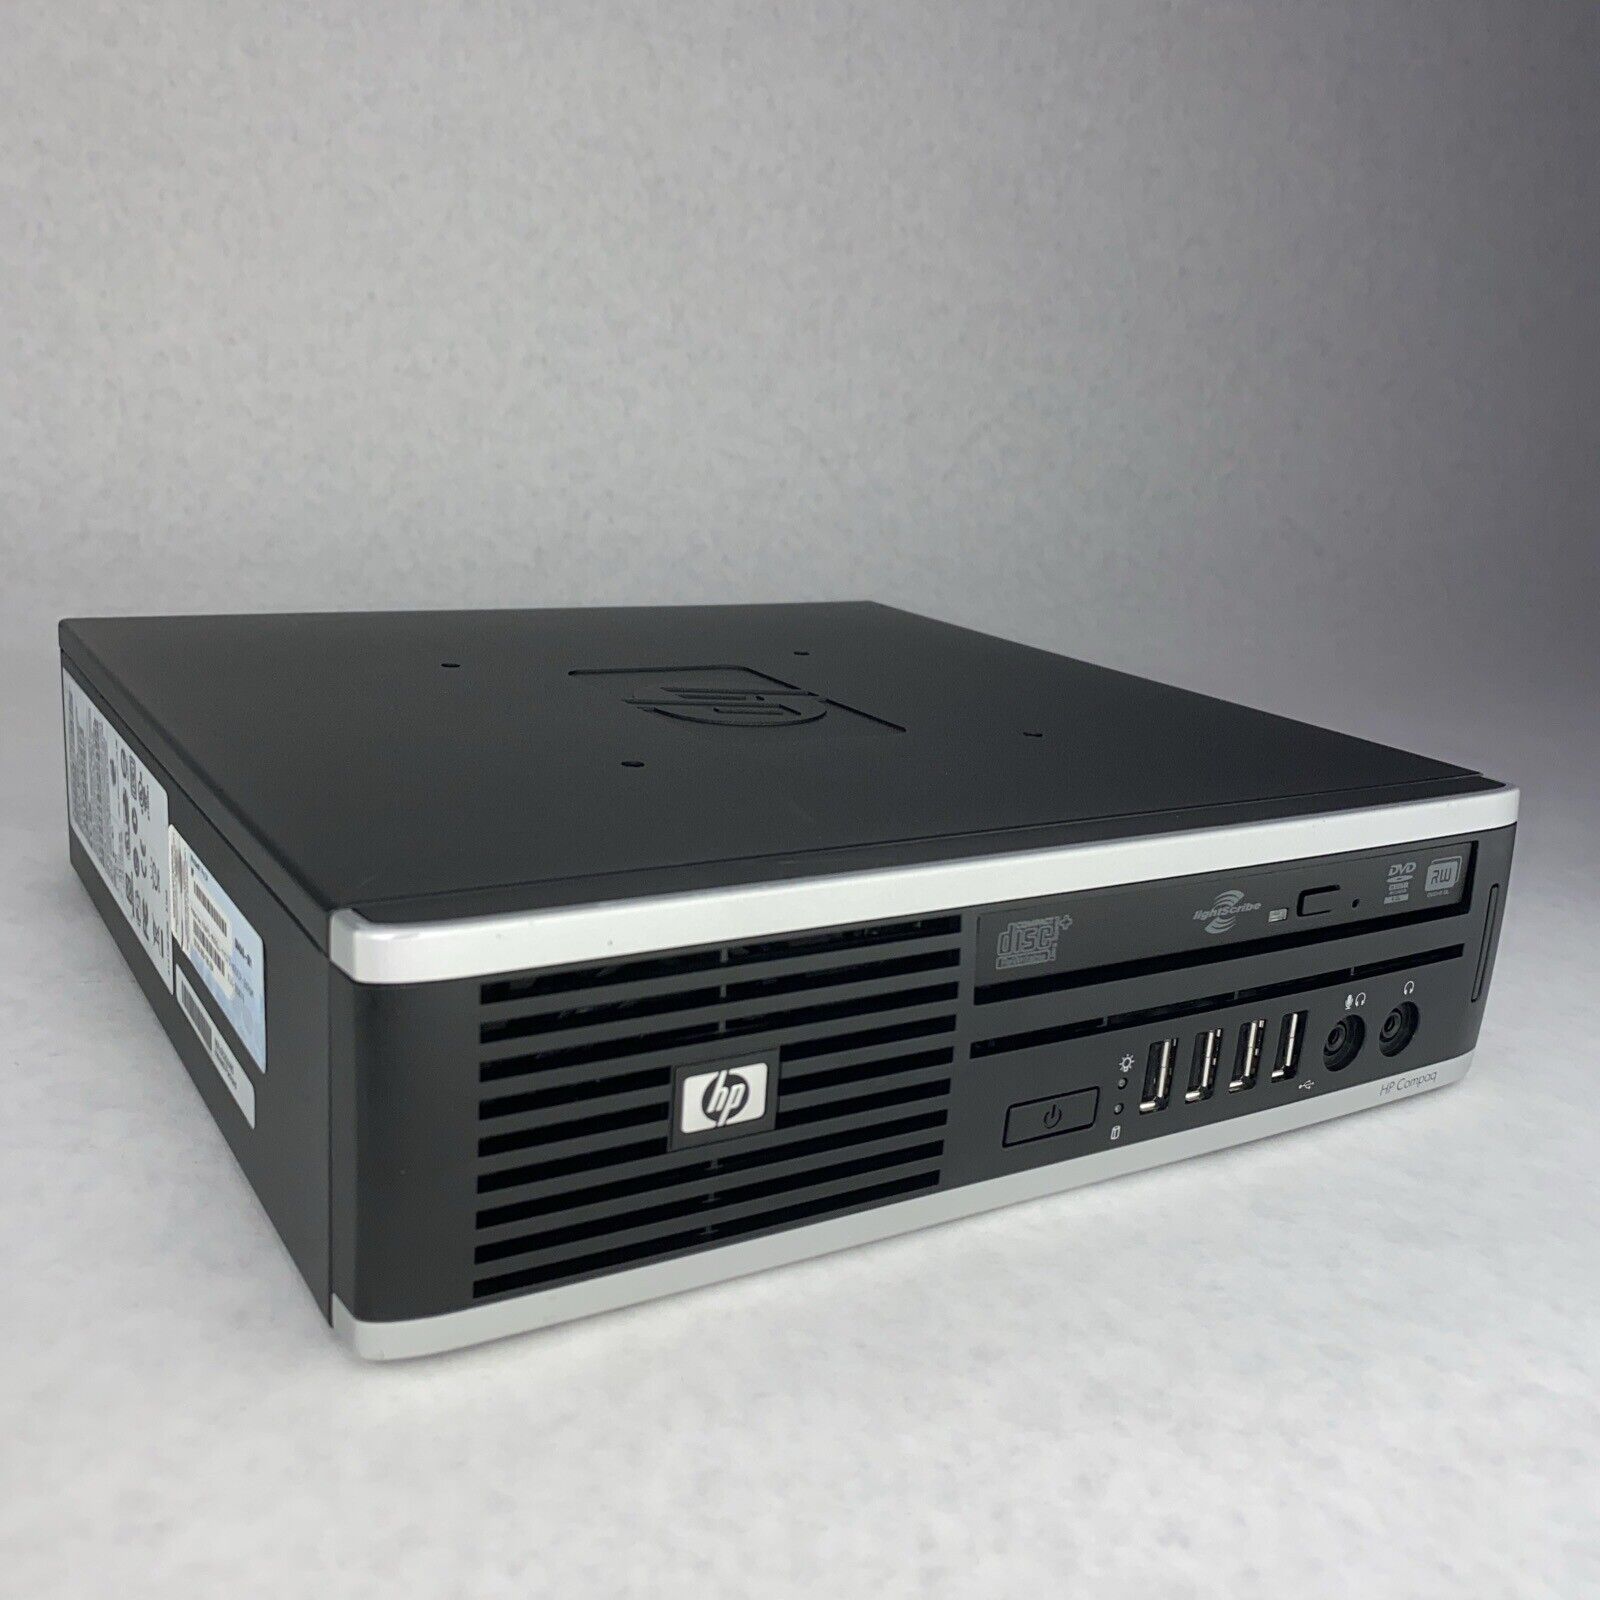 HP Compaq 6005 Pro USDT Athlon IIX2 B26 3.20GHz 4GB RAM WiFi No HDD No OS